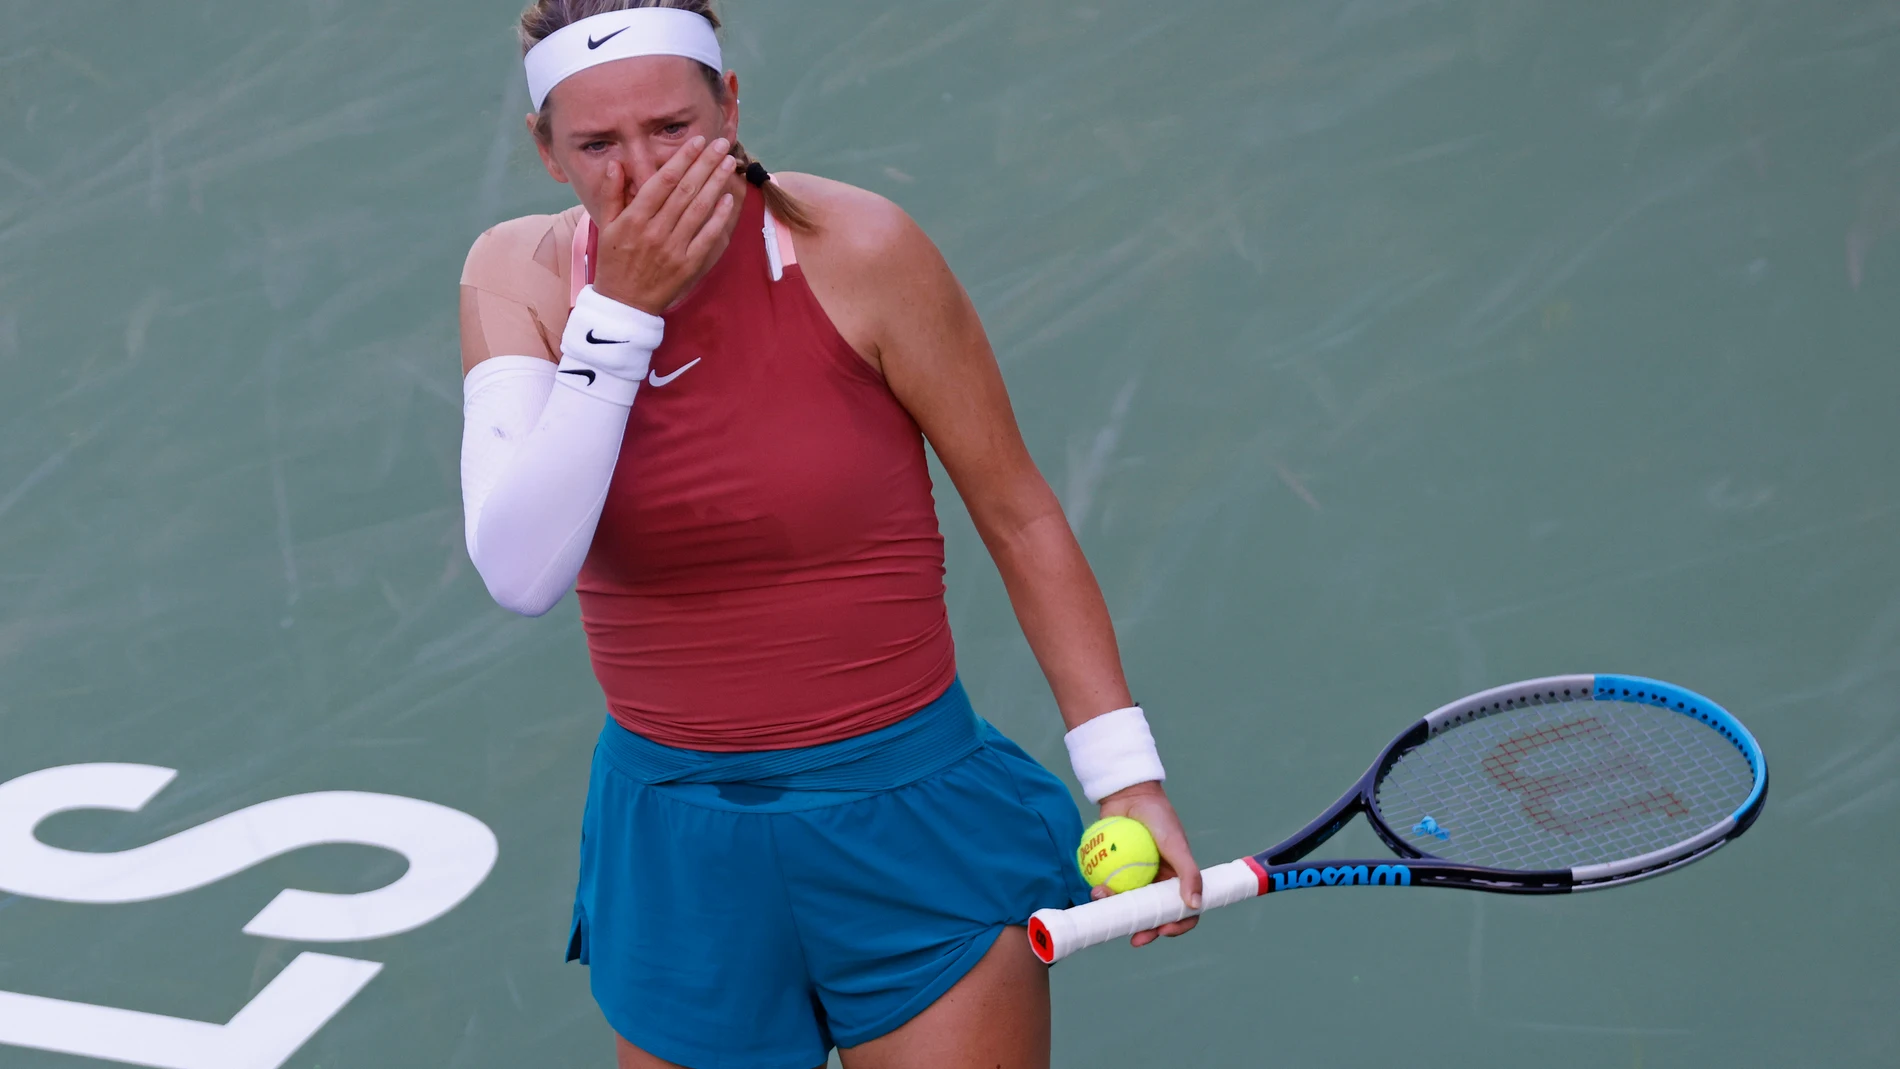 La tenista bielorrusa Victoria Azarenka llora en Indian Wells por la invasión de Ucrania.